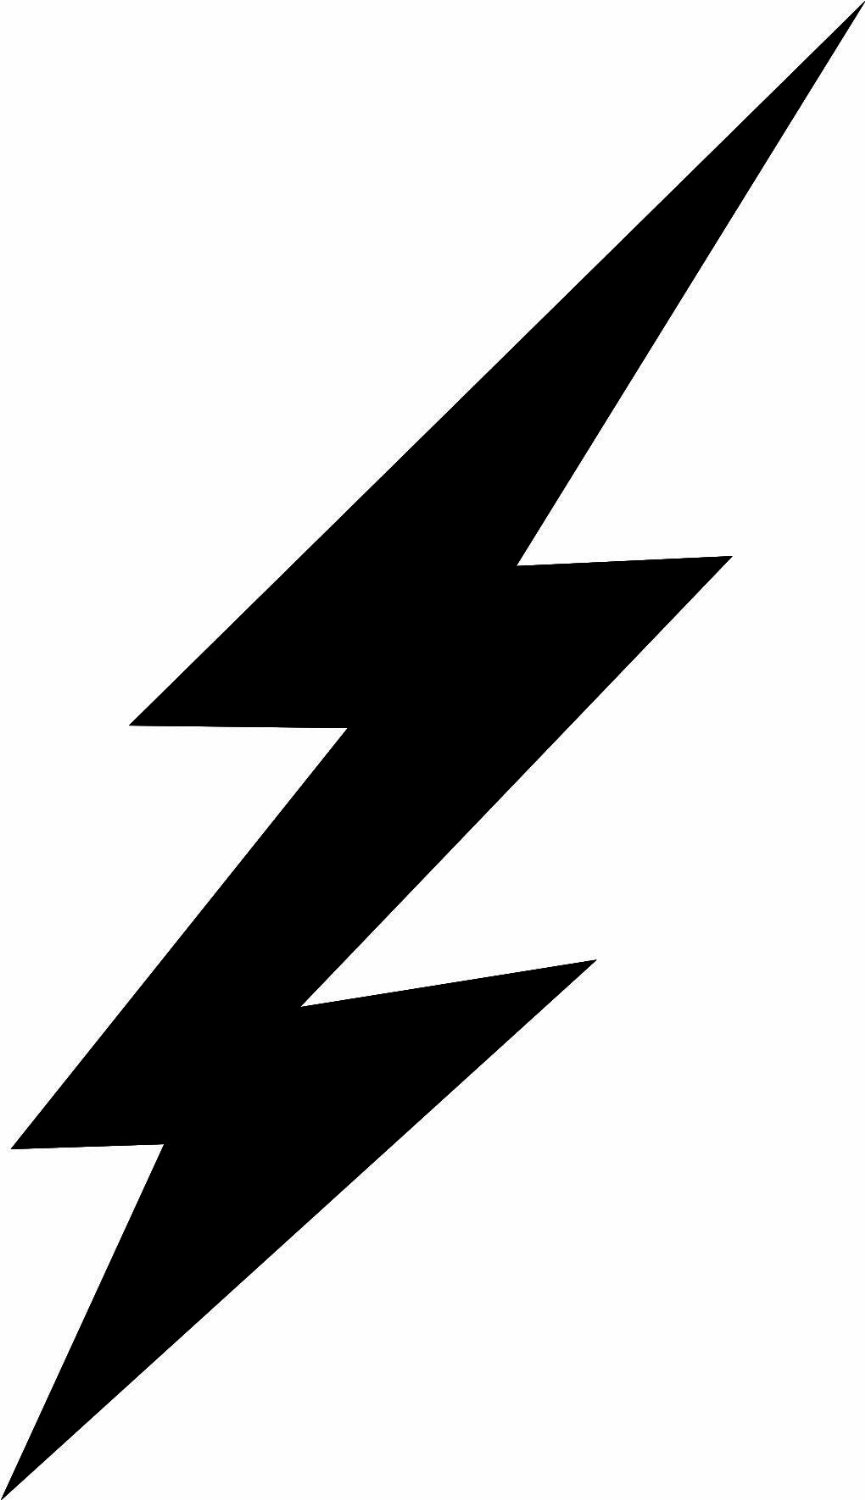 Lightning bolt stencil clipar